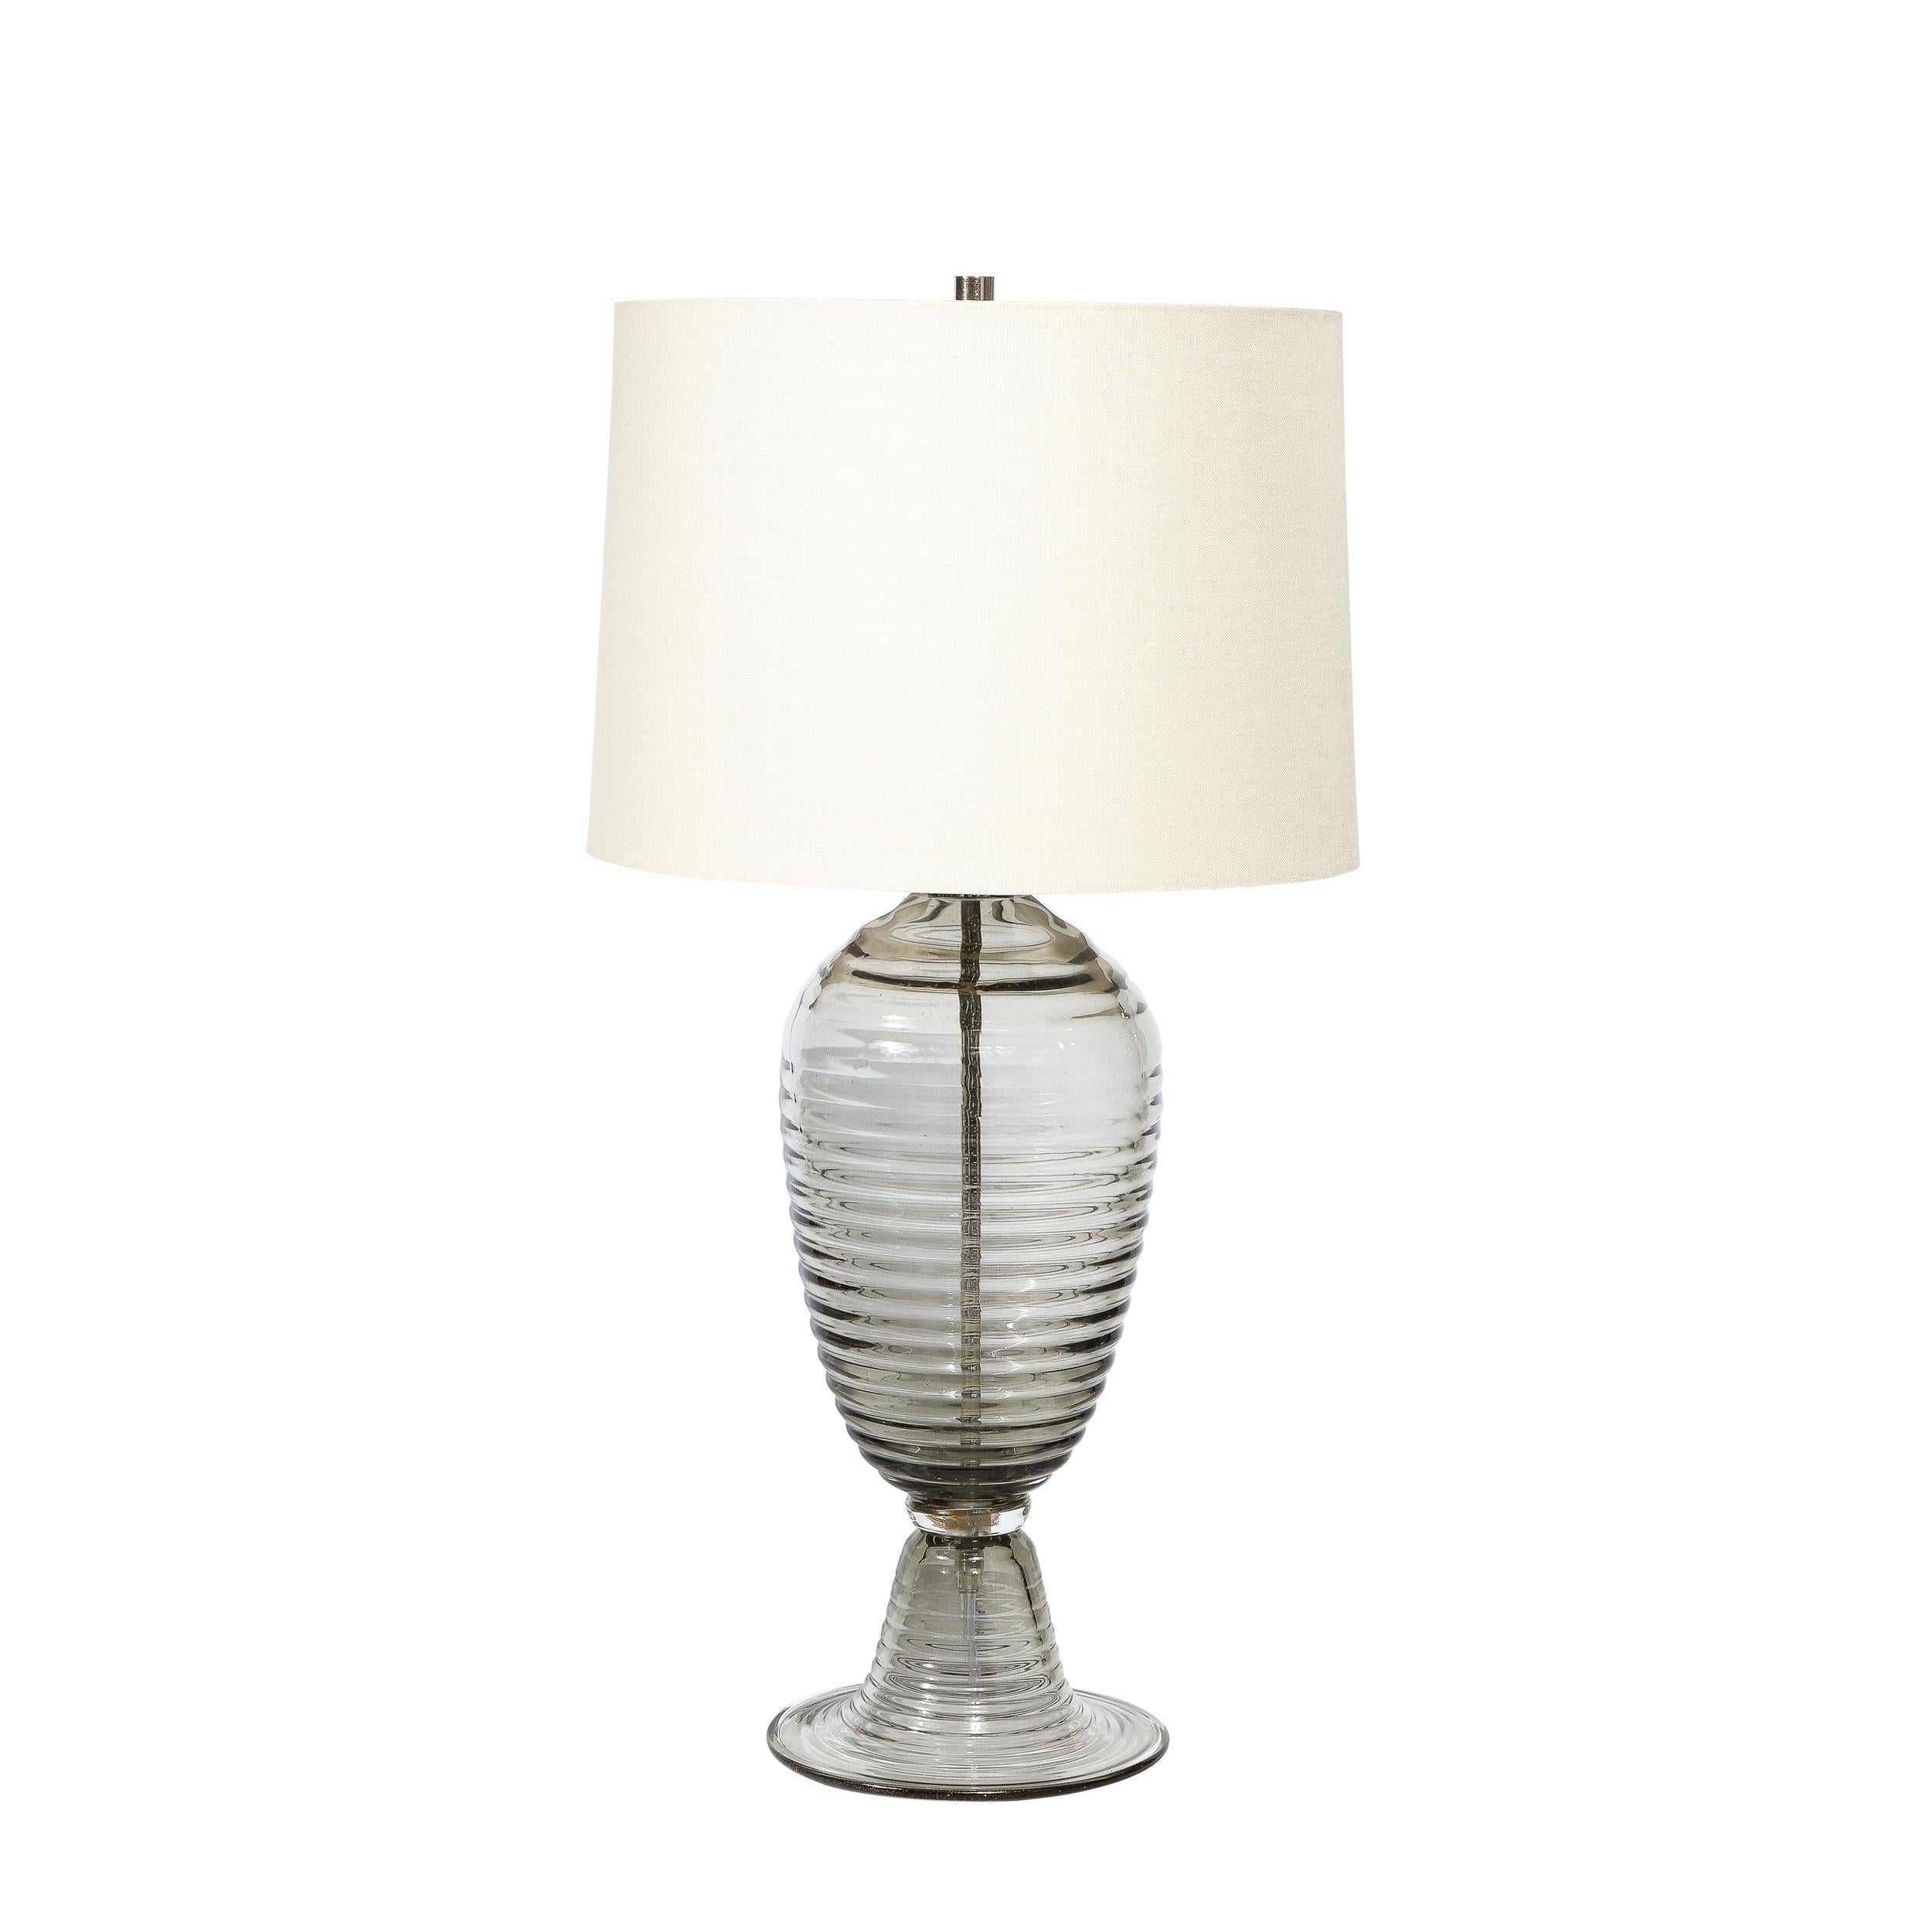 Cette paire de lampes de table modernistes en verre fumé de Murano soufflé à la main en forme de ruche provient d'Italie au cours du 21e siècle. Ce modèle présente un profil magnifique avec des rainures horizontales sur tout le corps de la pièce. Il